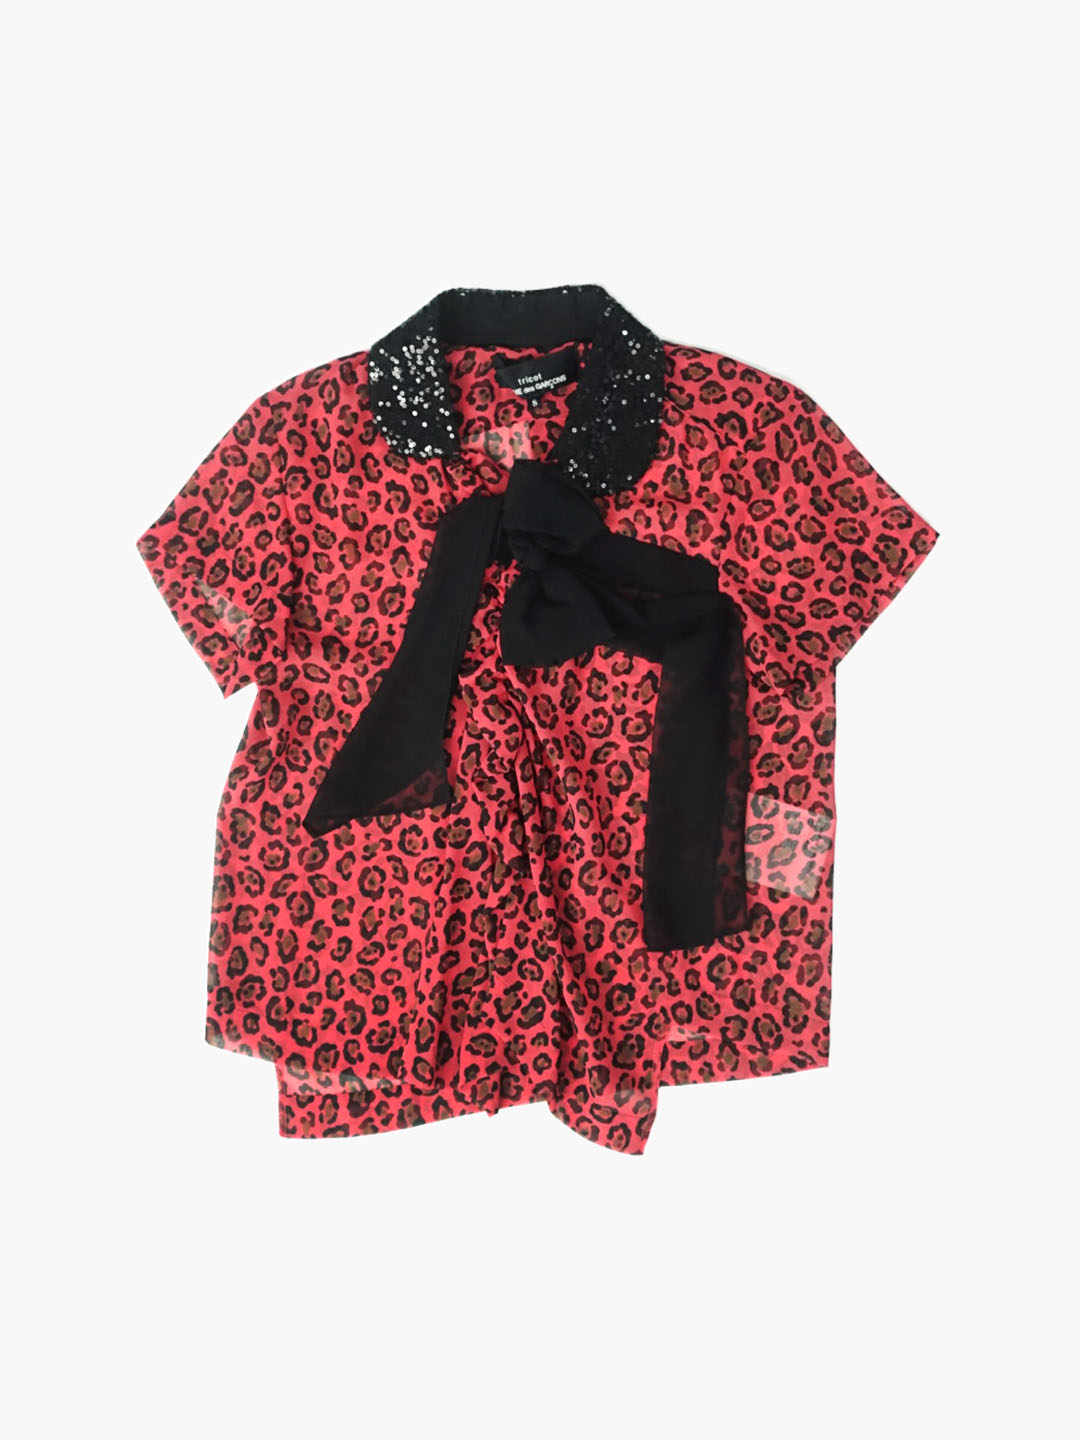 TRICOT COMME DES GARCONSLeopard ribbon blouse